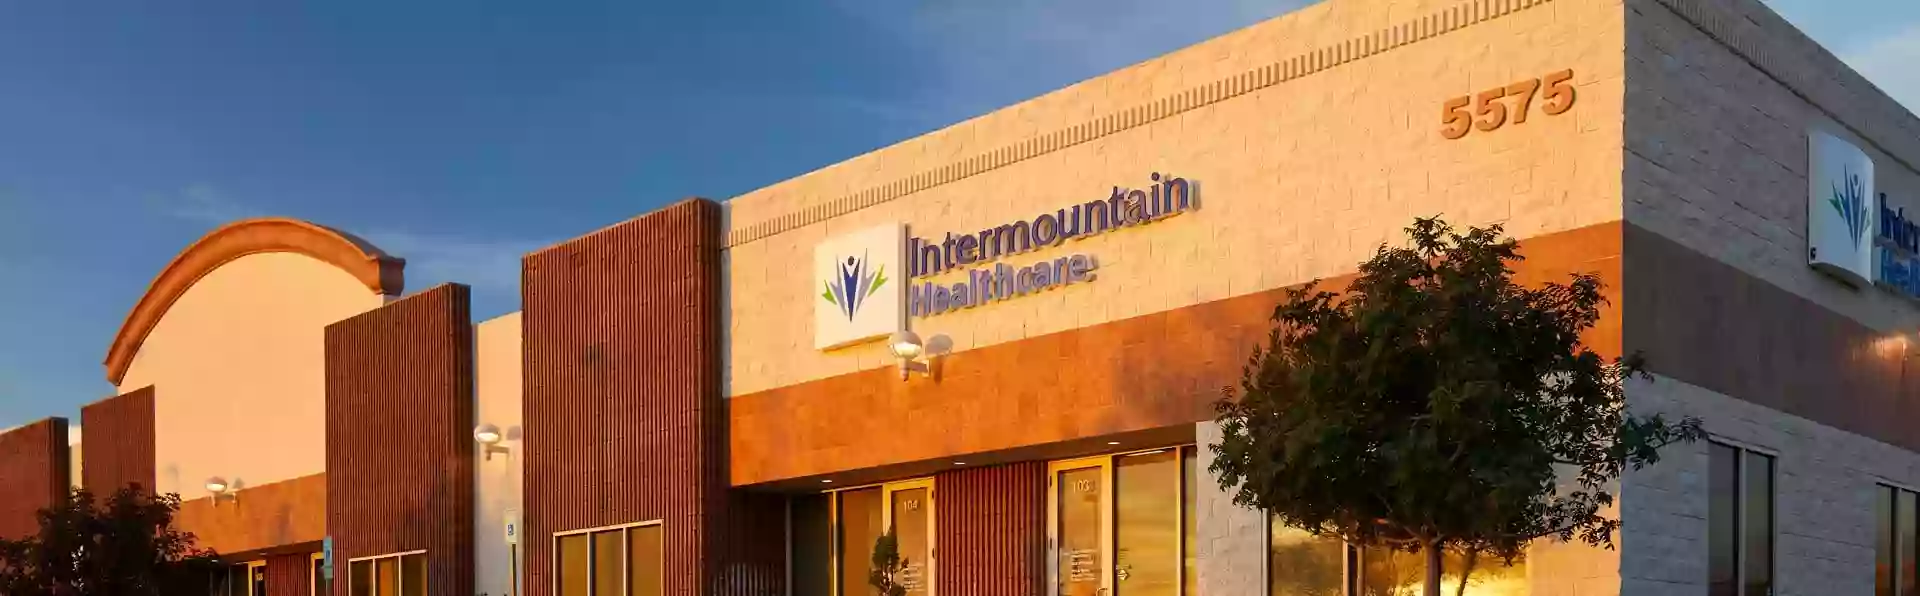 Intermountain Healthcare Durango Pediatrics Clinic